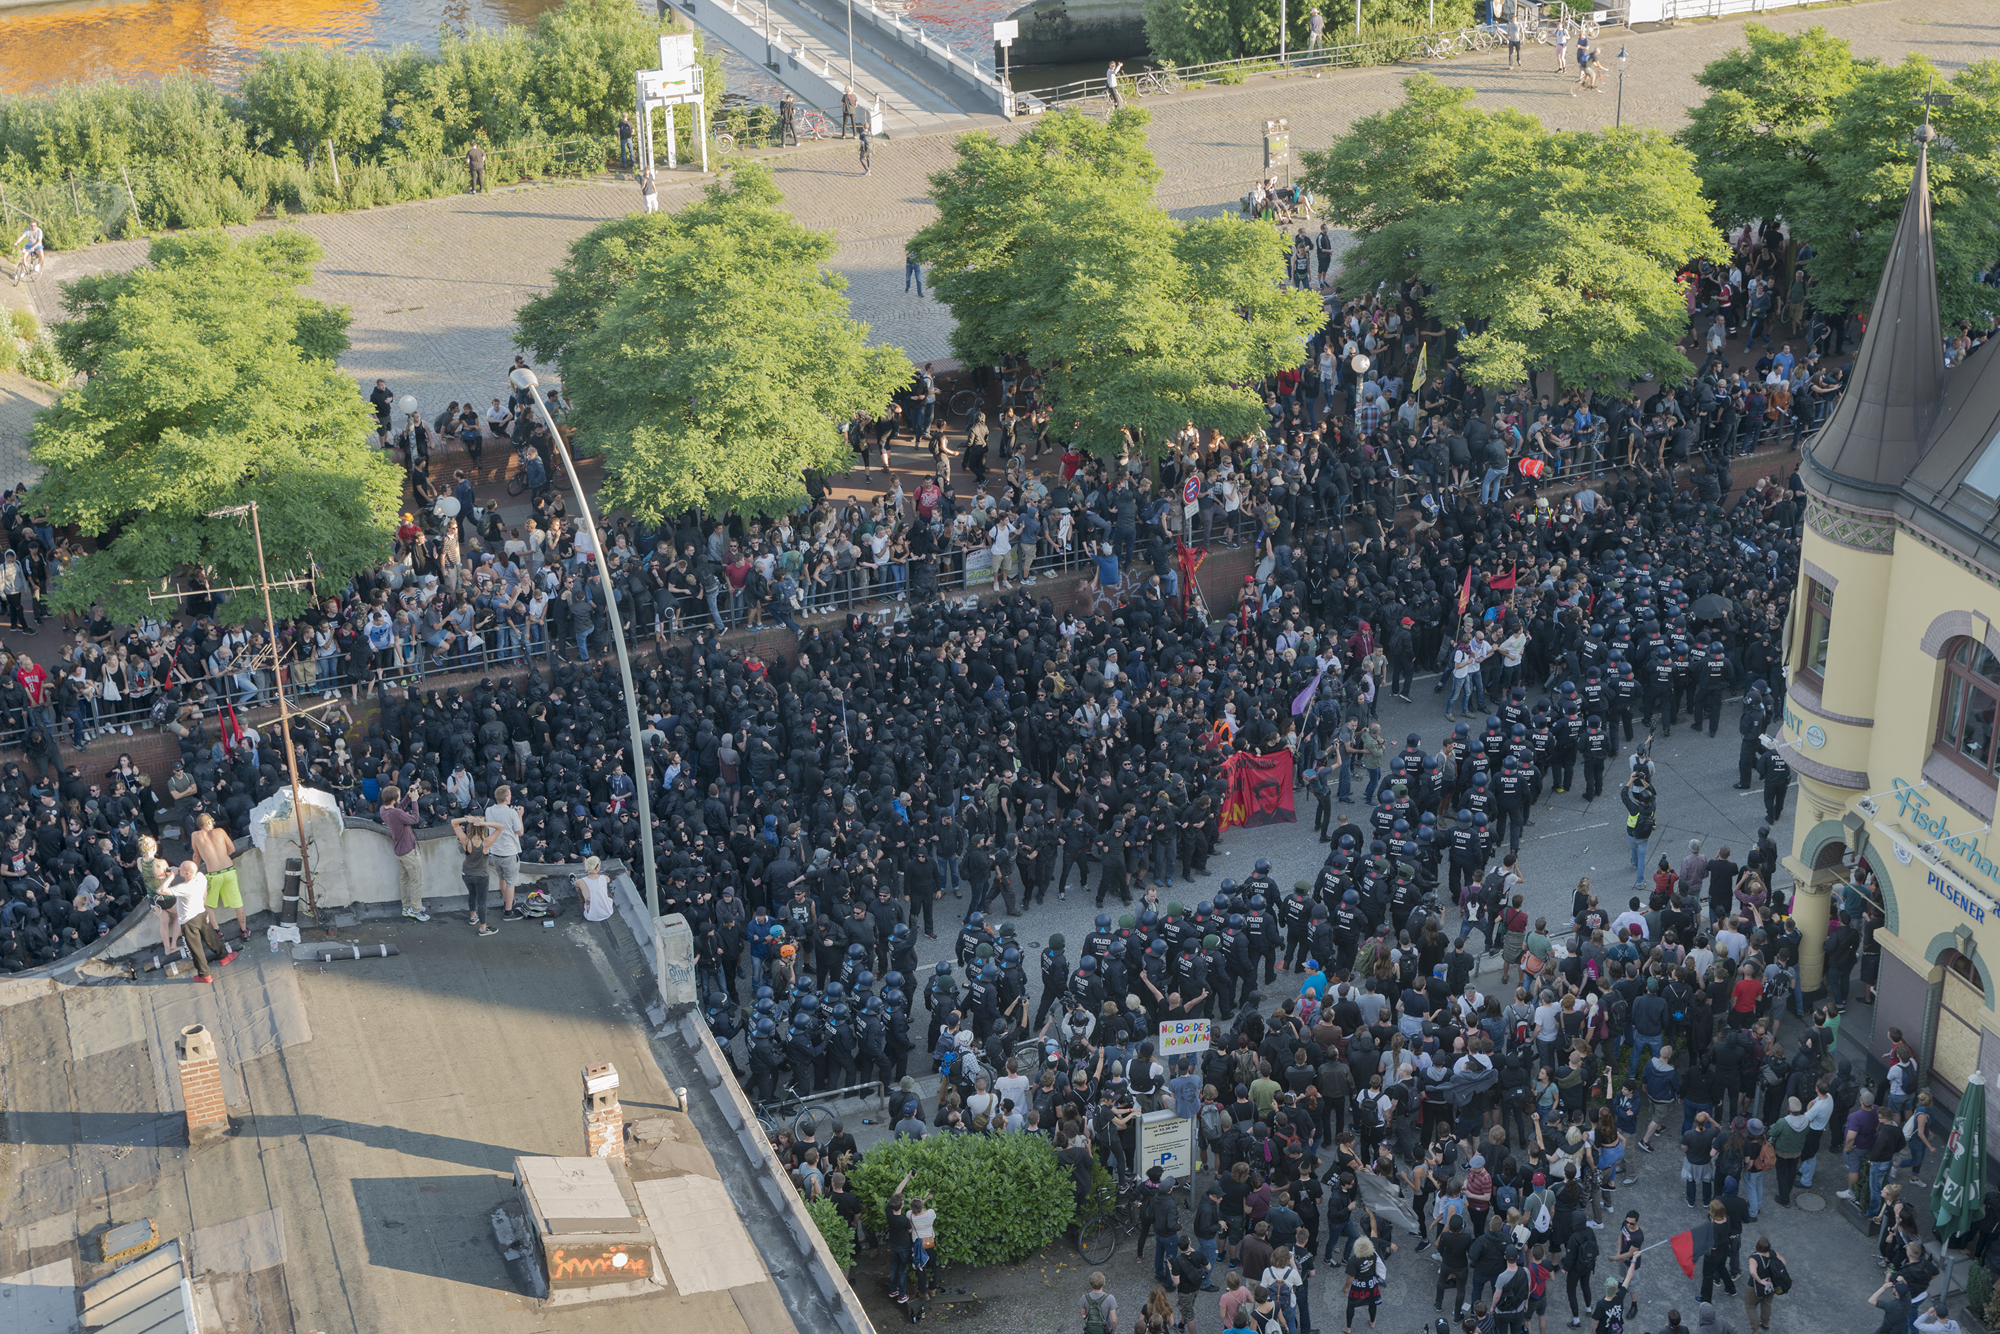 Welcome to Hell: Polizei zerschlägt bis dahin friedliche Demo  